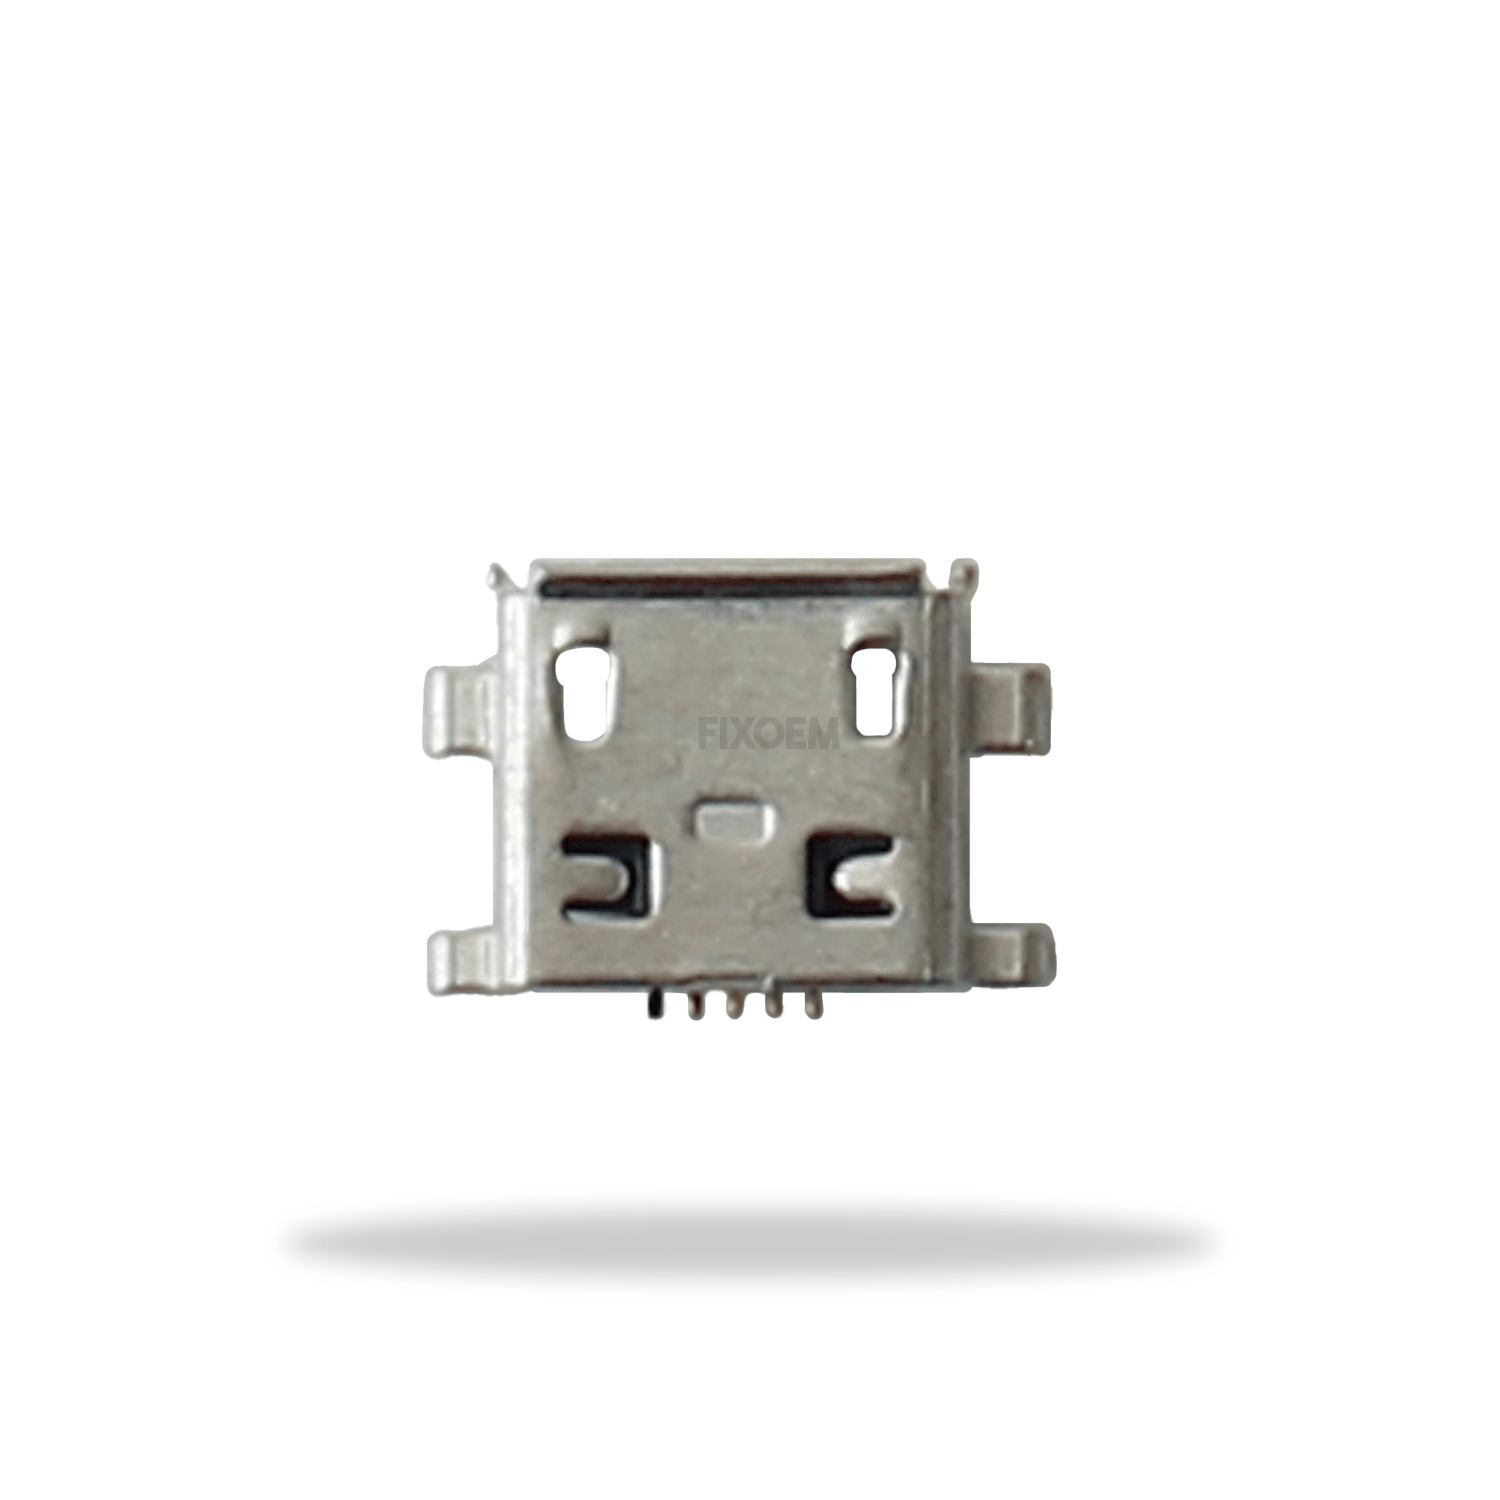 Pin Carga V880 Chino Zte L2 5Pz a solo $ 30.00 Refaccion y puestos celulares, refurbish y microelectronica.- FixOEM